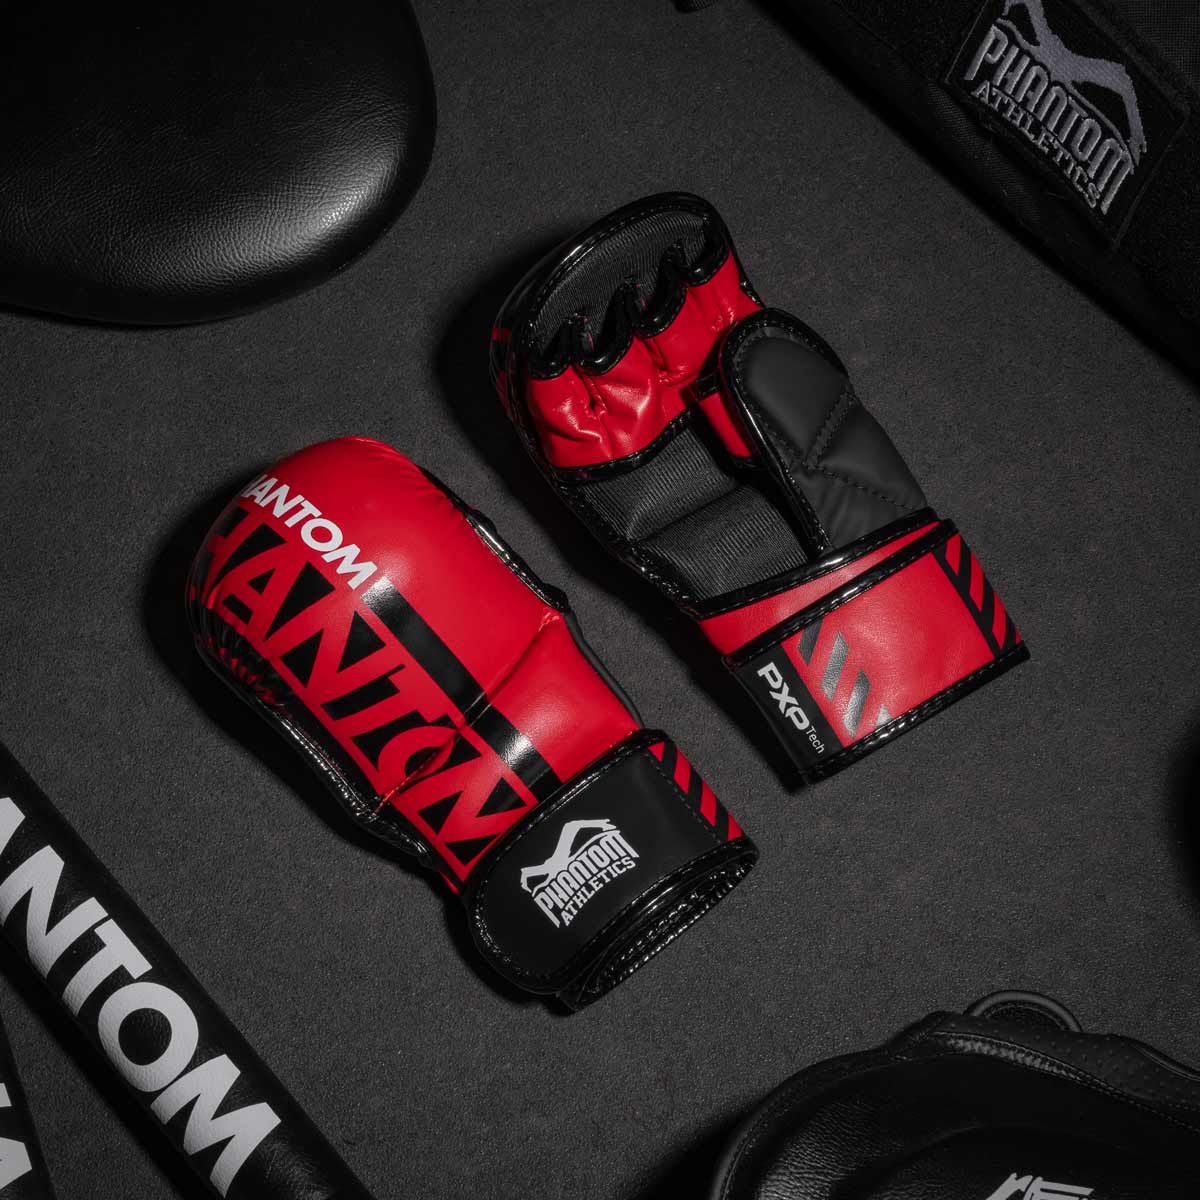 Die Phantom MMA Sparringshandschuhe. Der sicherste Handschuh für dein Kampfsport Training. Jetzt in der limitierten roten Farbe.